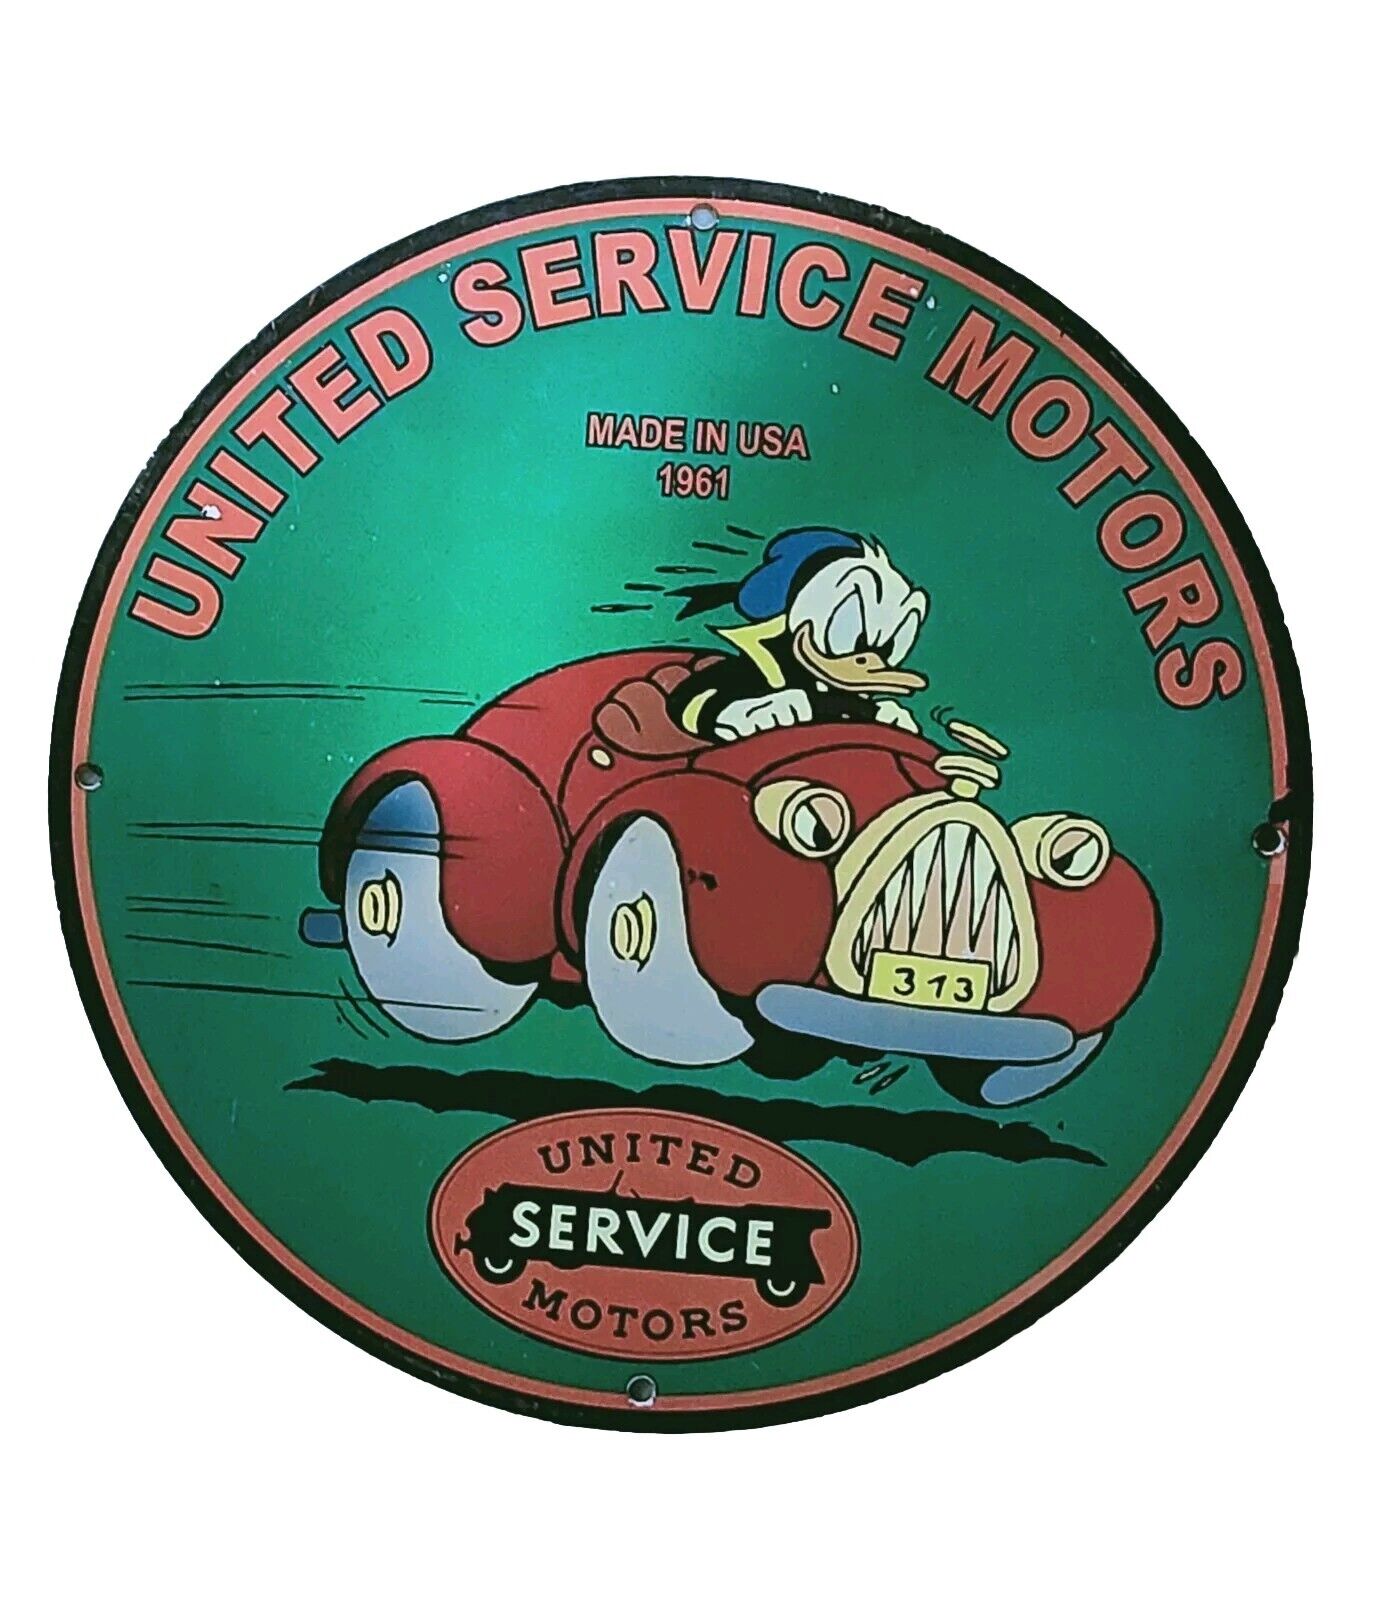 VINTAGE 1961 UNITED SERVICE MOTORS PIN UP MAN CAVE GARAGE BAR PORCELAIN SIGN 12